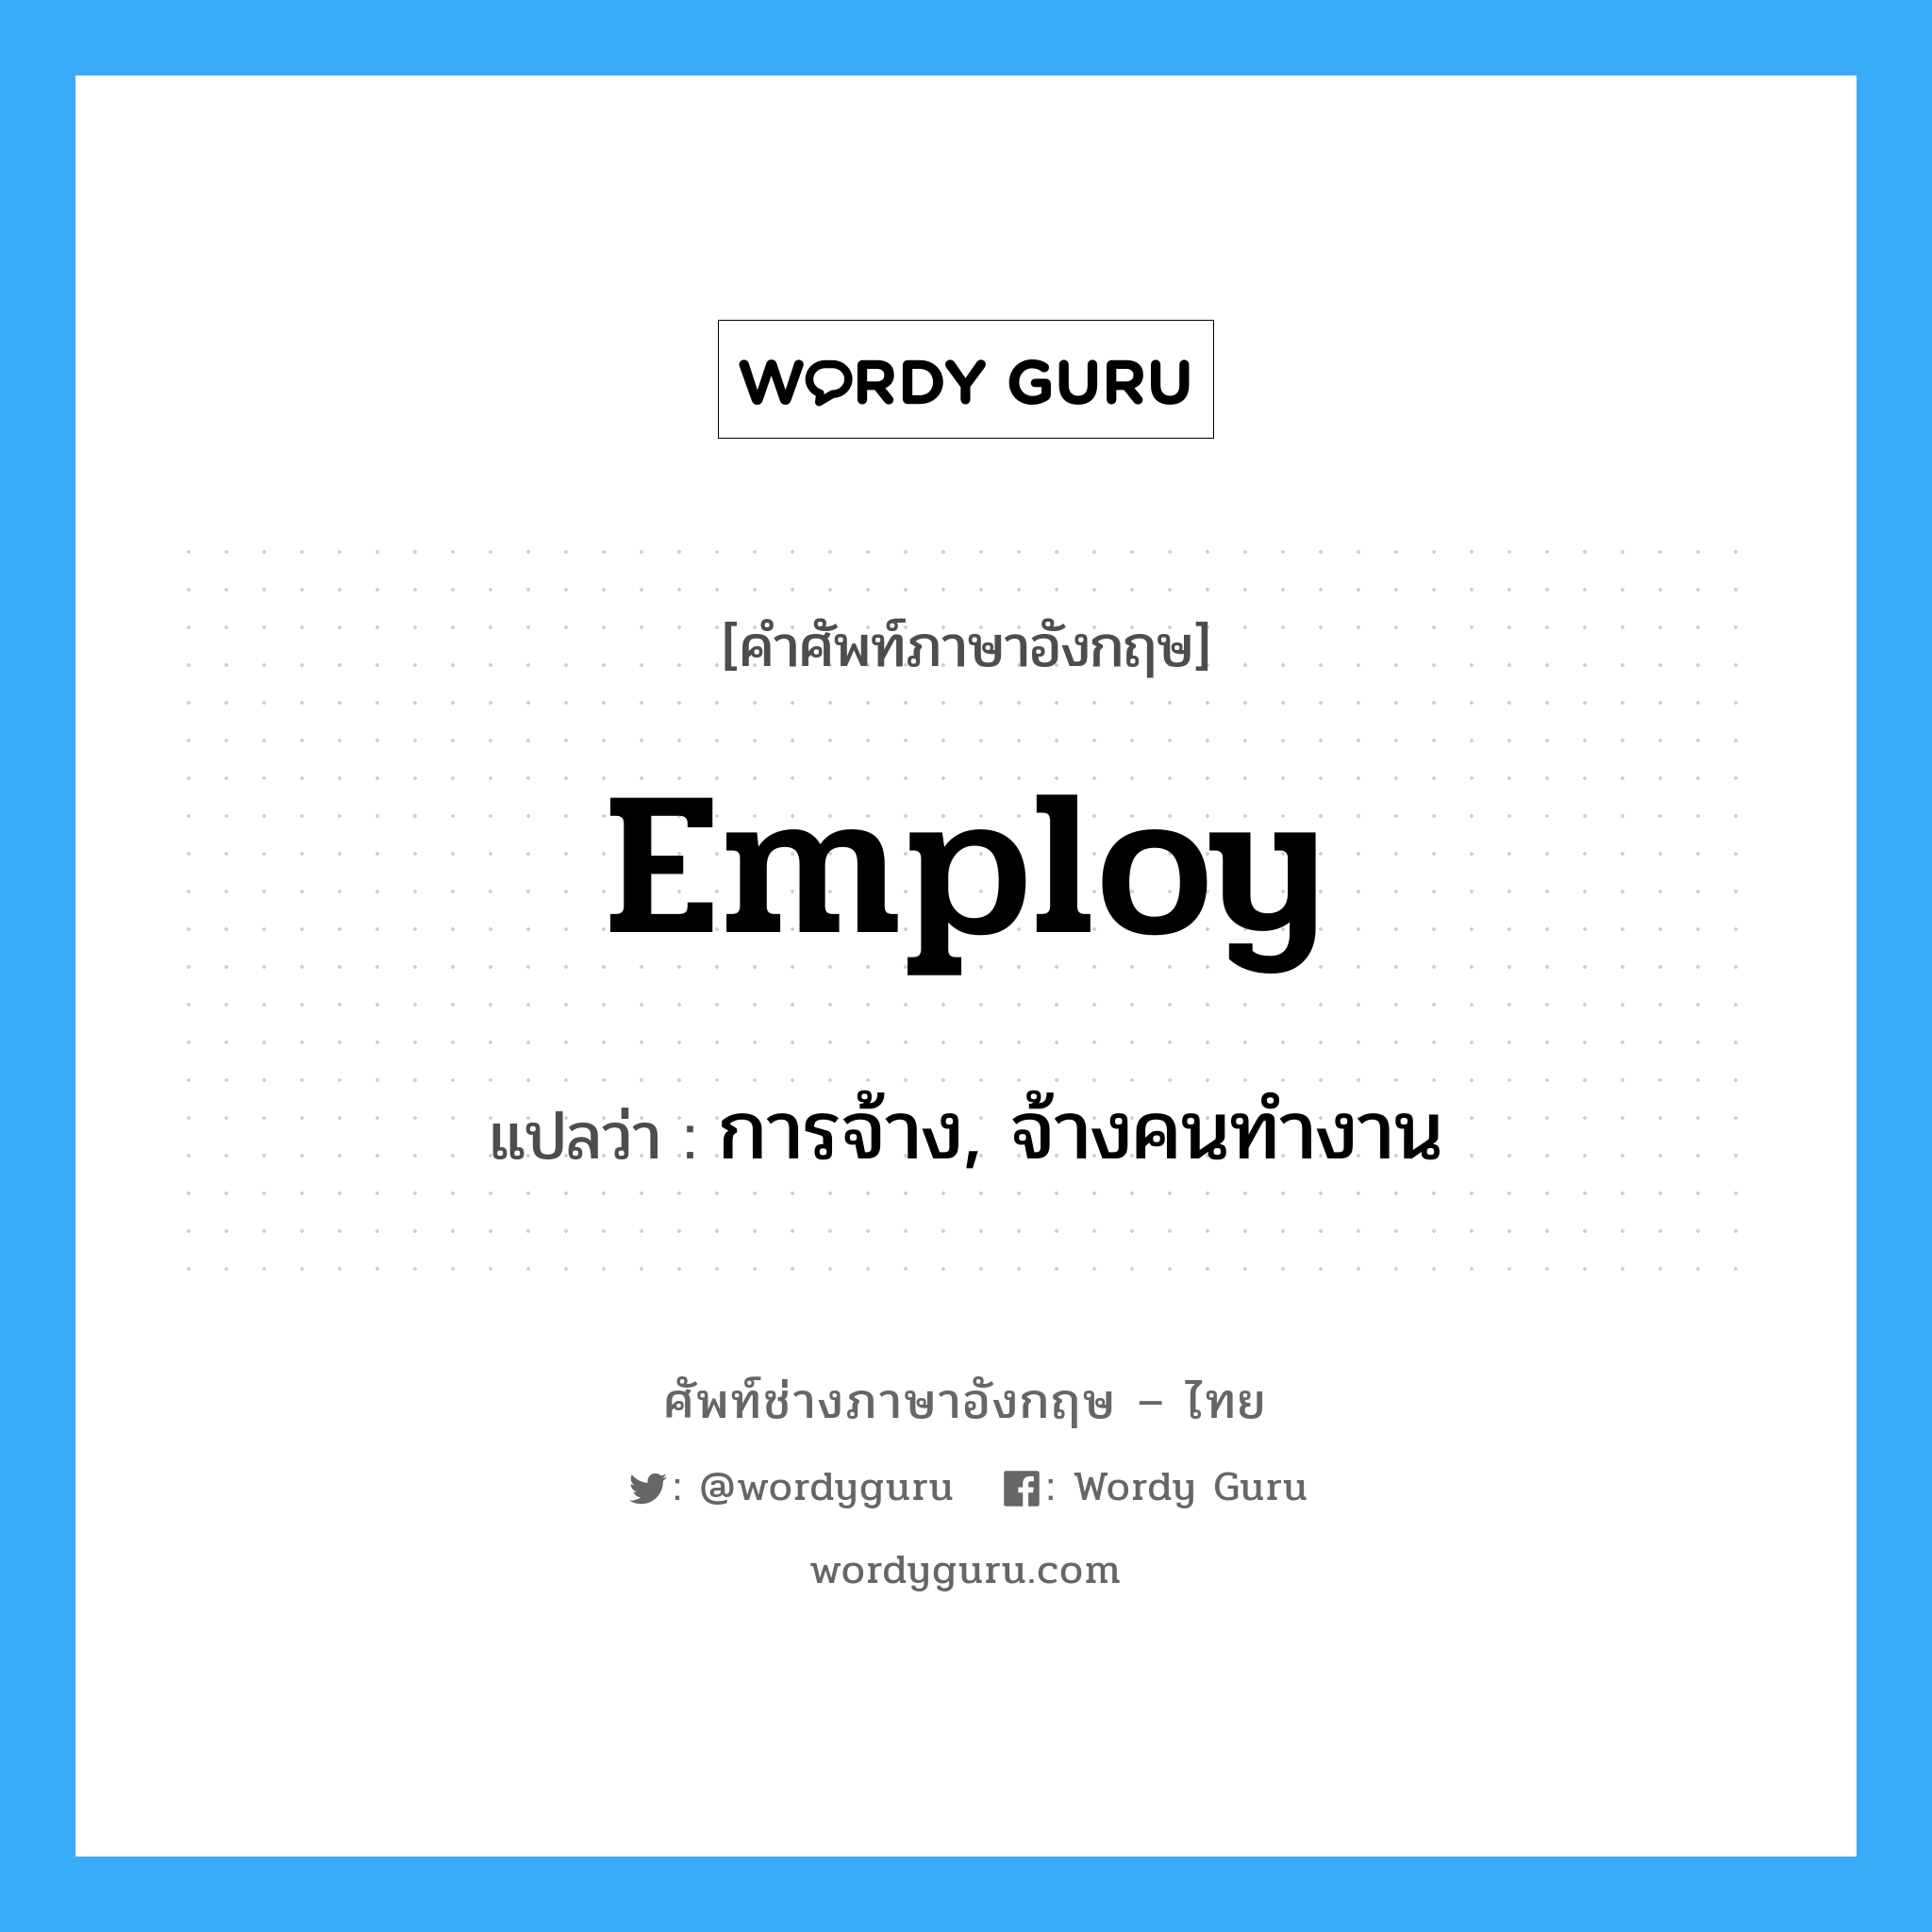 การจ้าง, จ้างคนทำงาน ภาษาอังกฤษ?, คำศัพท์ช่างภาษาอังกฤษ - ไทย การจ้าง, จ้างคนทำงาน คำศัพท์ภาษาอังกฤษ การจ้าง, จ้างคนทำงาน แปลว่า employ